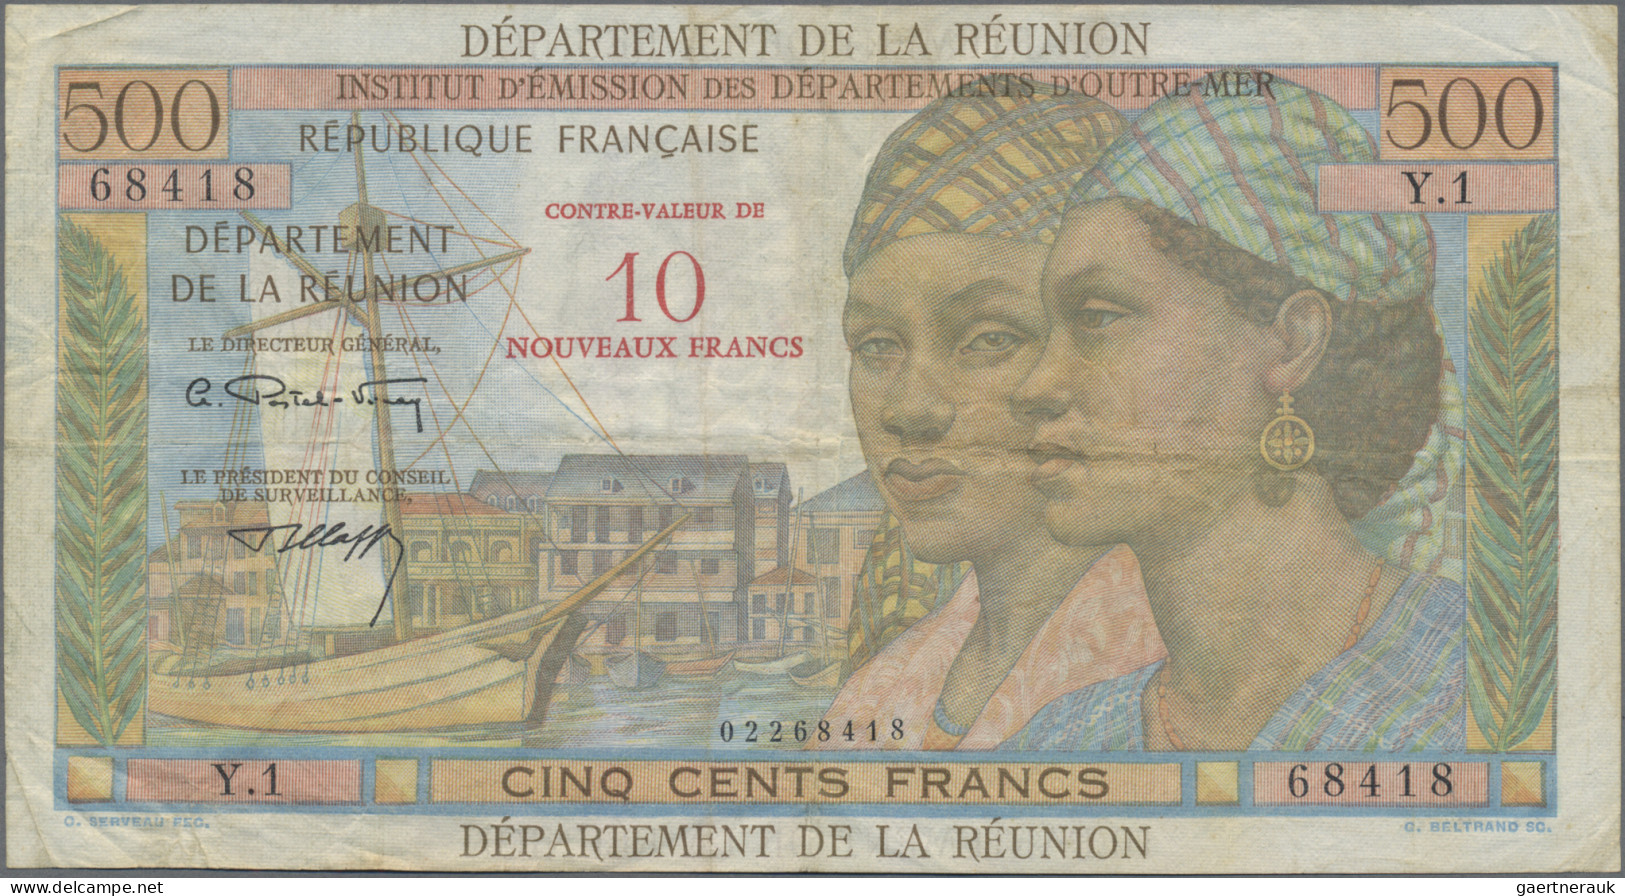 Réunion: Institut D'Émission Des Départements D'Outre-Mer – REUNION, Pair With 1 - Reunion